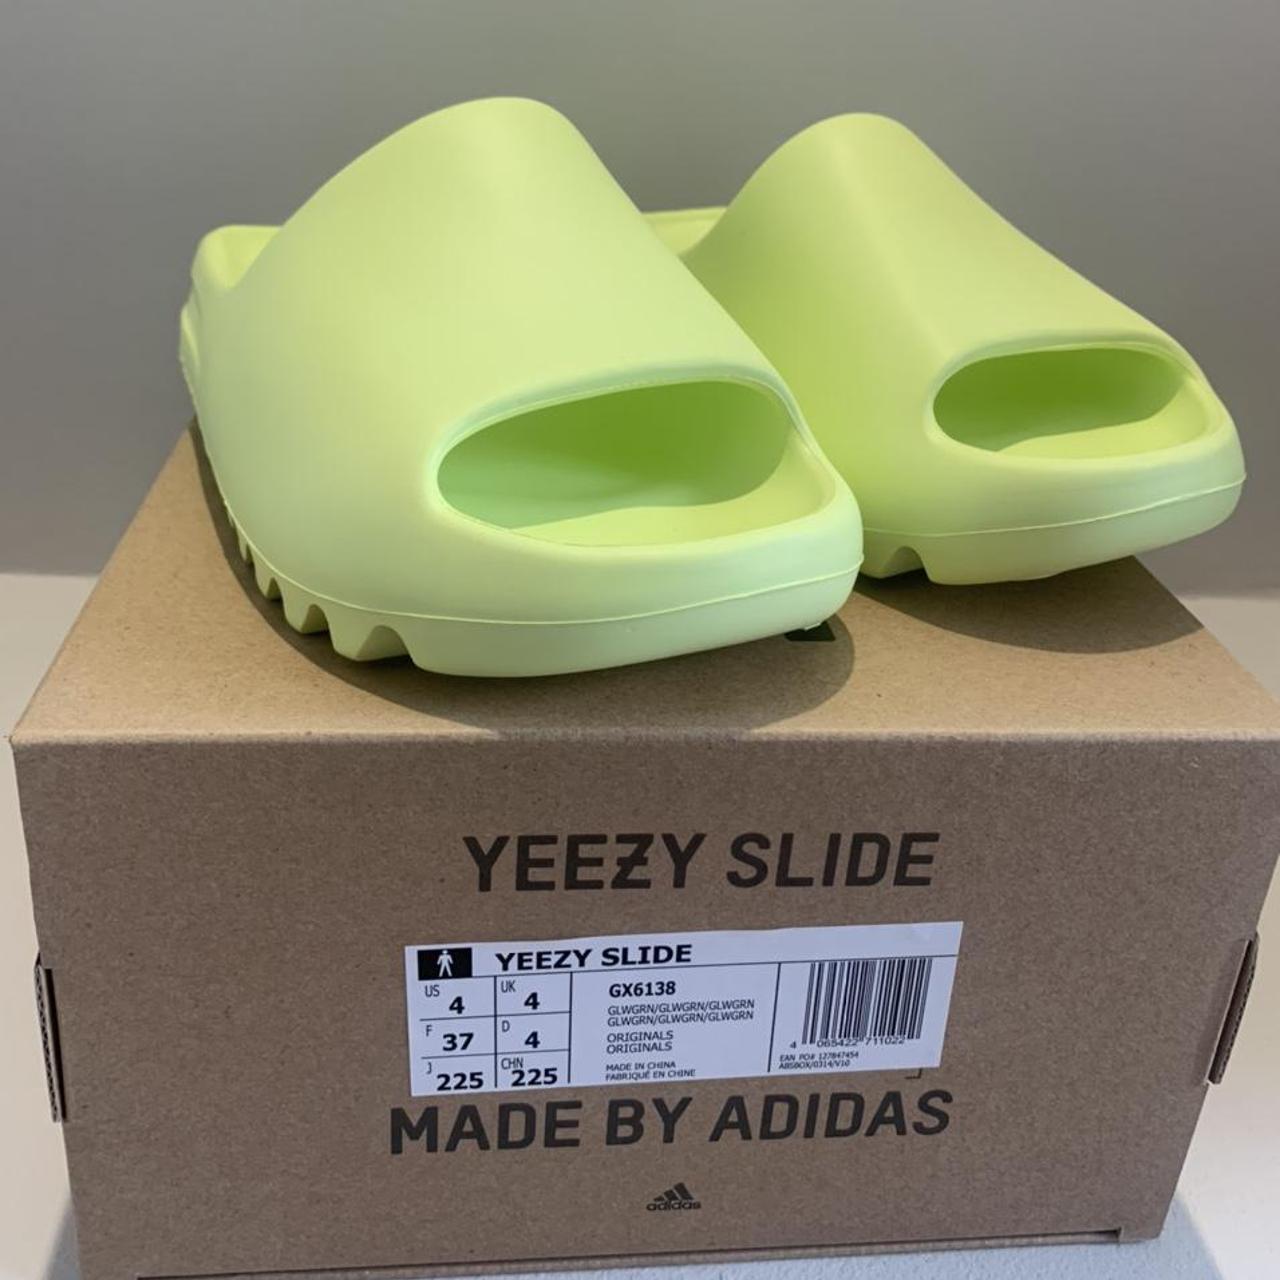 Product Image 2 - Adidas Yeezy Slide Glow Green
UK